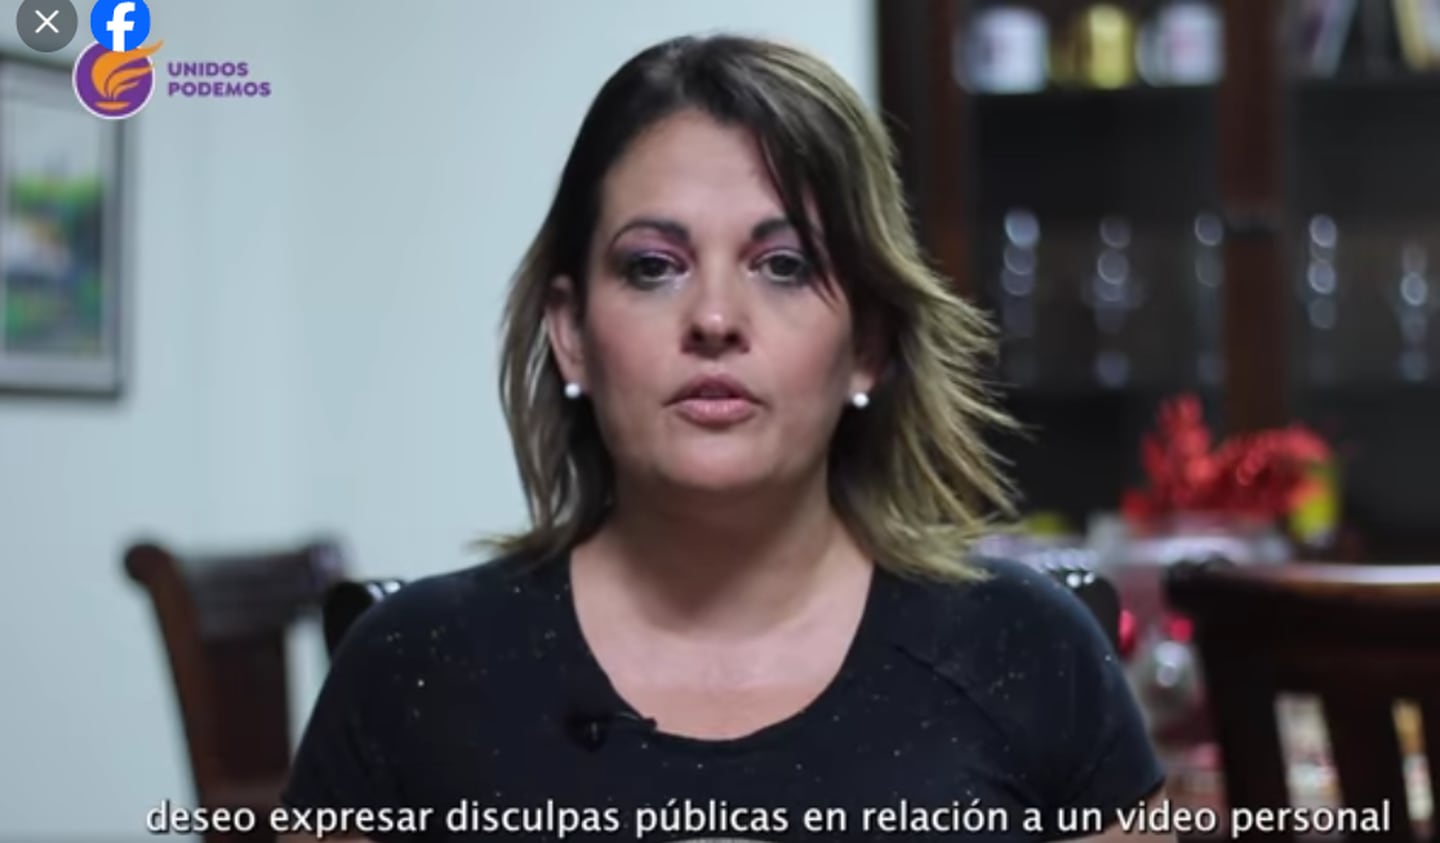 La candidata a síndica Martha Flores ofreció una disculpa en redes sociales y dijo que publicó el video por error.